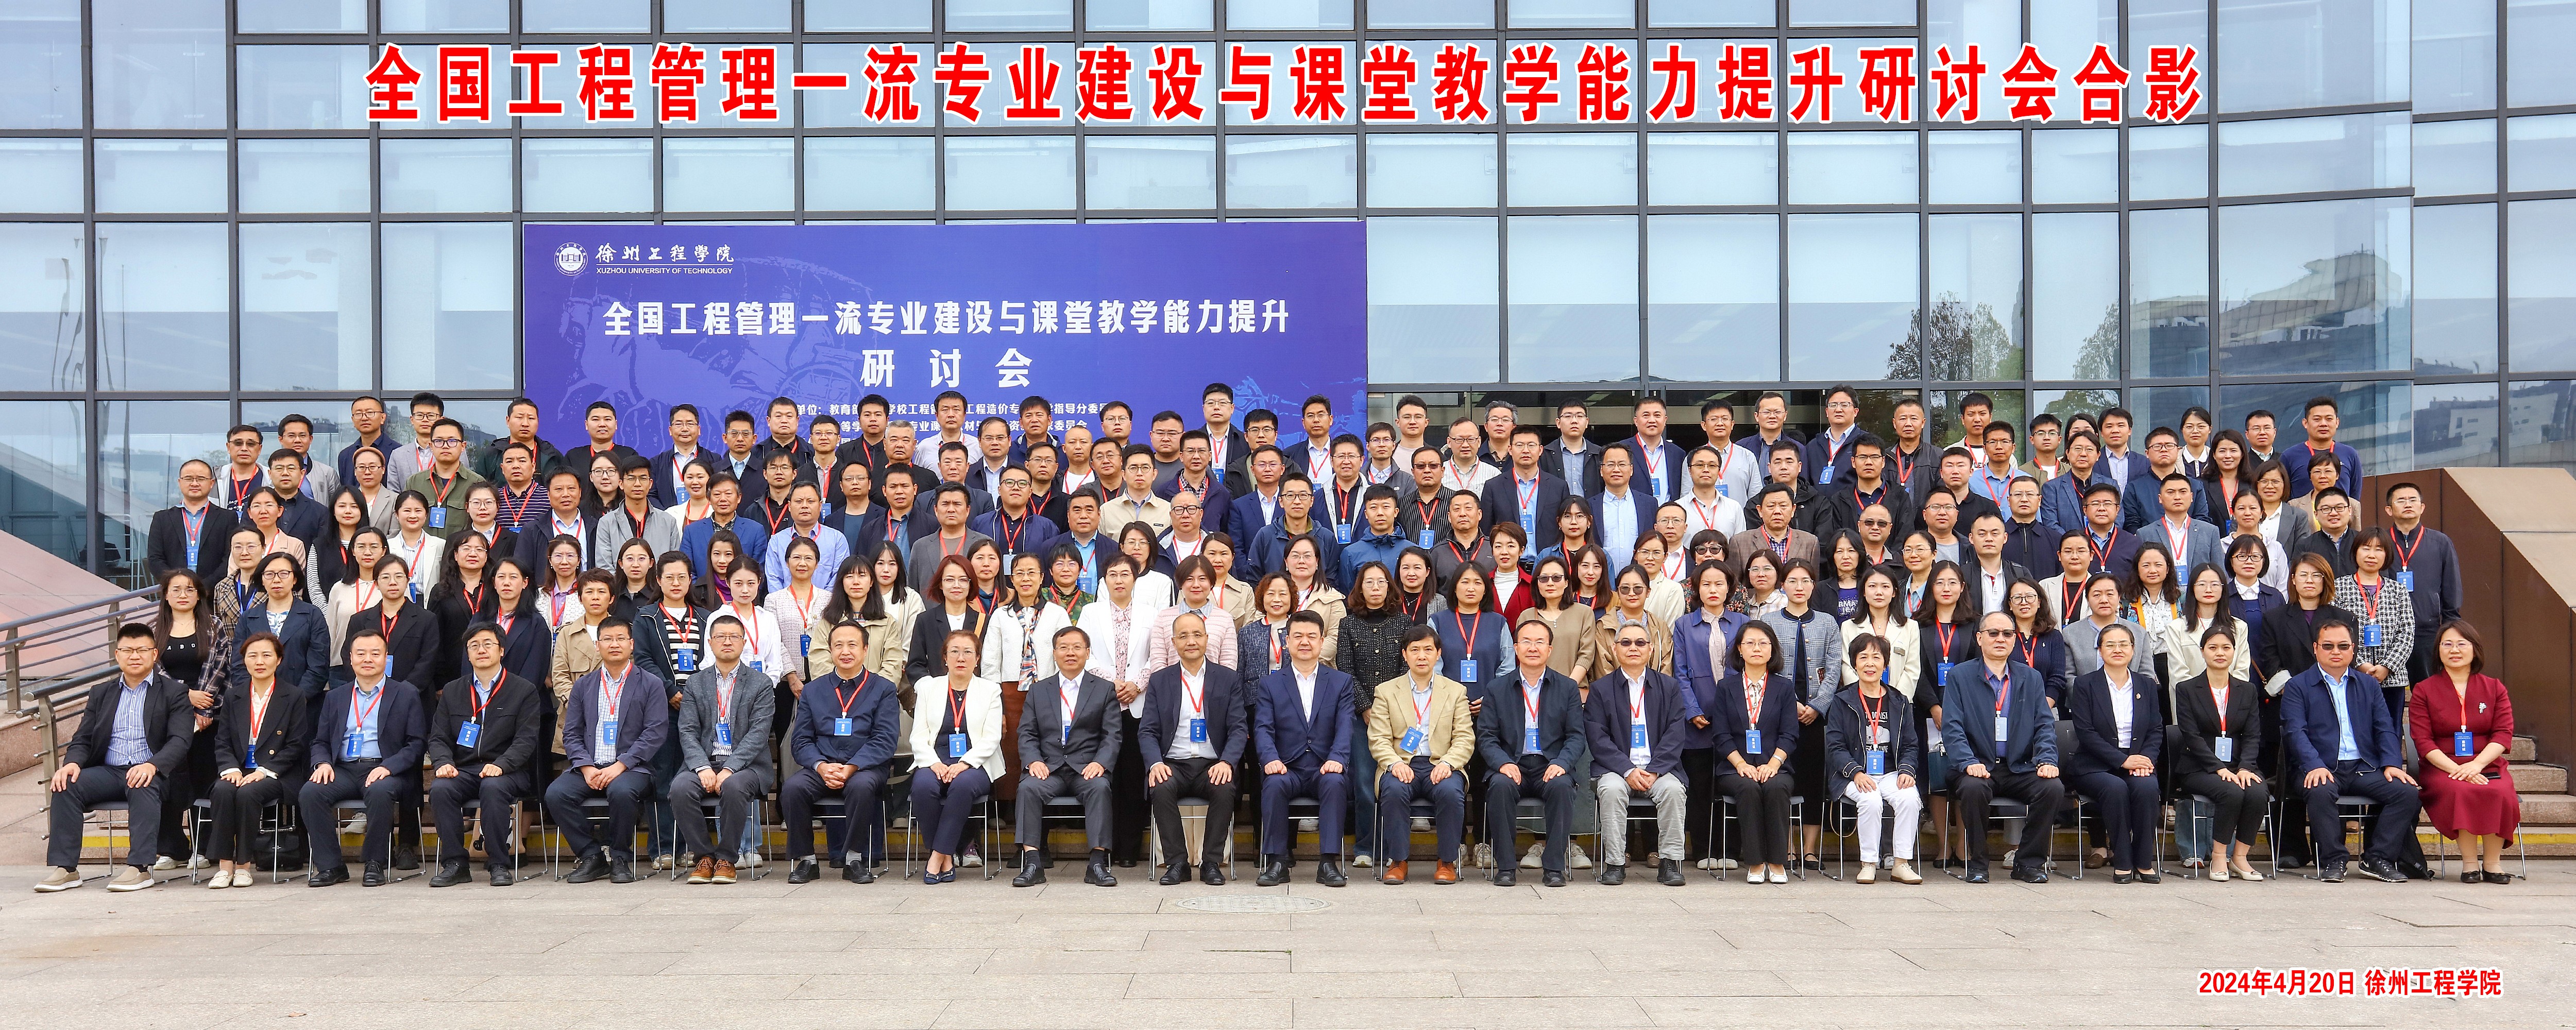 全国工程管理一流专业建设与课堂教学能力提升研讨会在徐州工程学院圆满举行